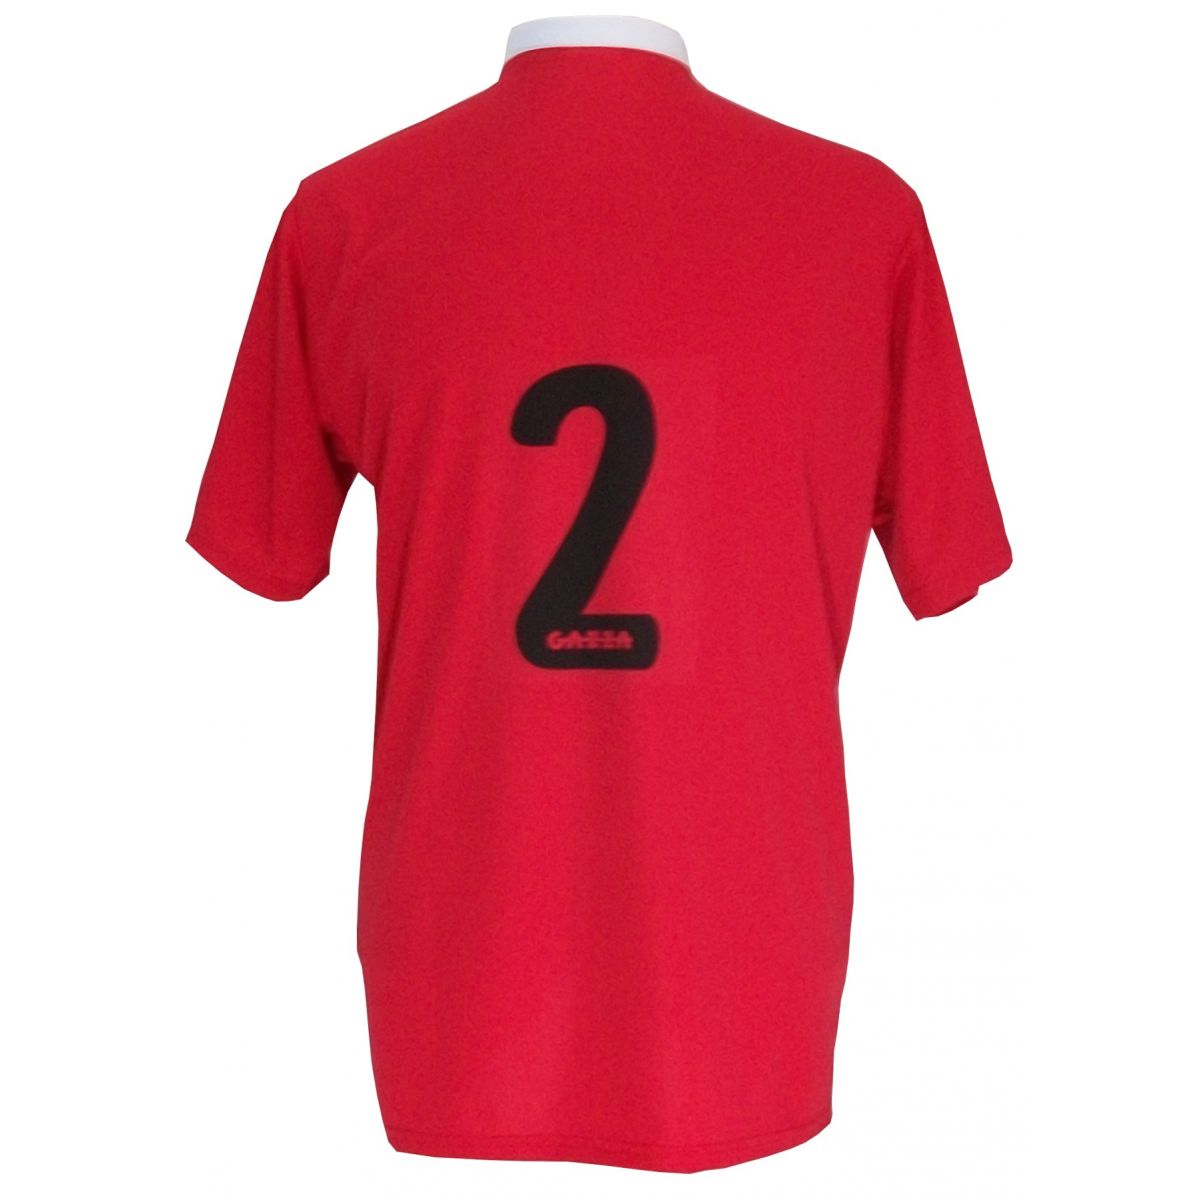 Jogo de Camisa com 14 unidades modelo PSG Vermelho/Preto/Branco + 1 Goleiro + Brindes